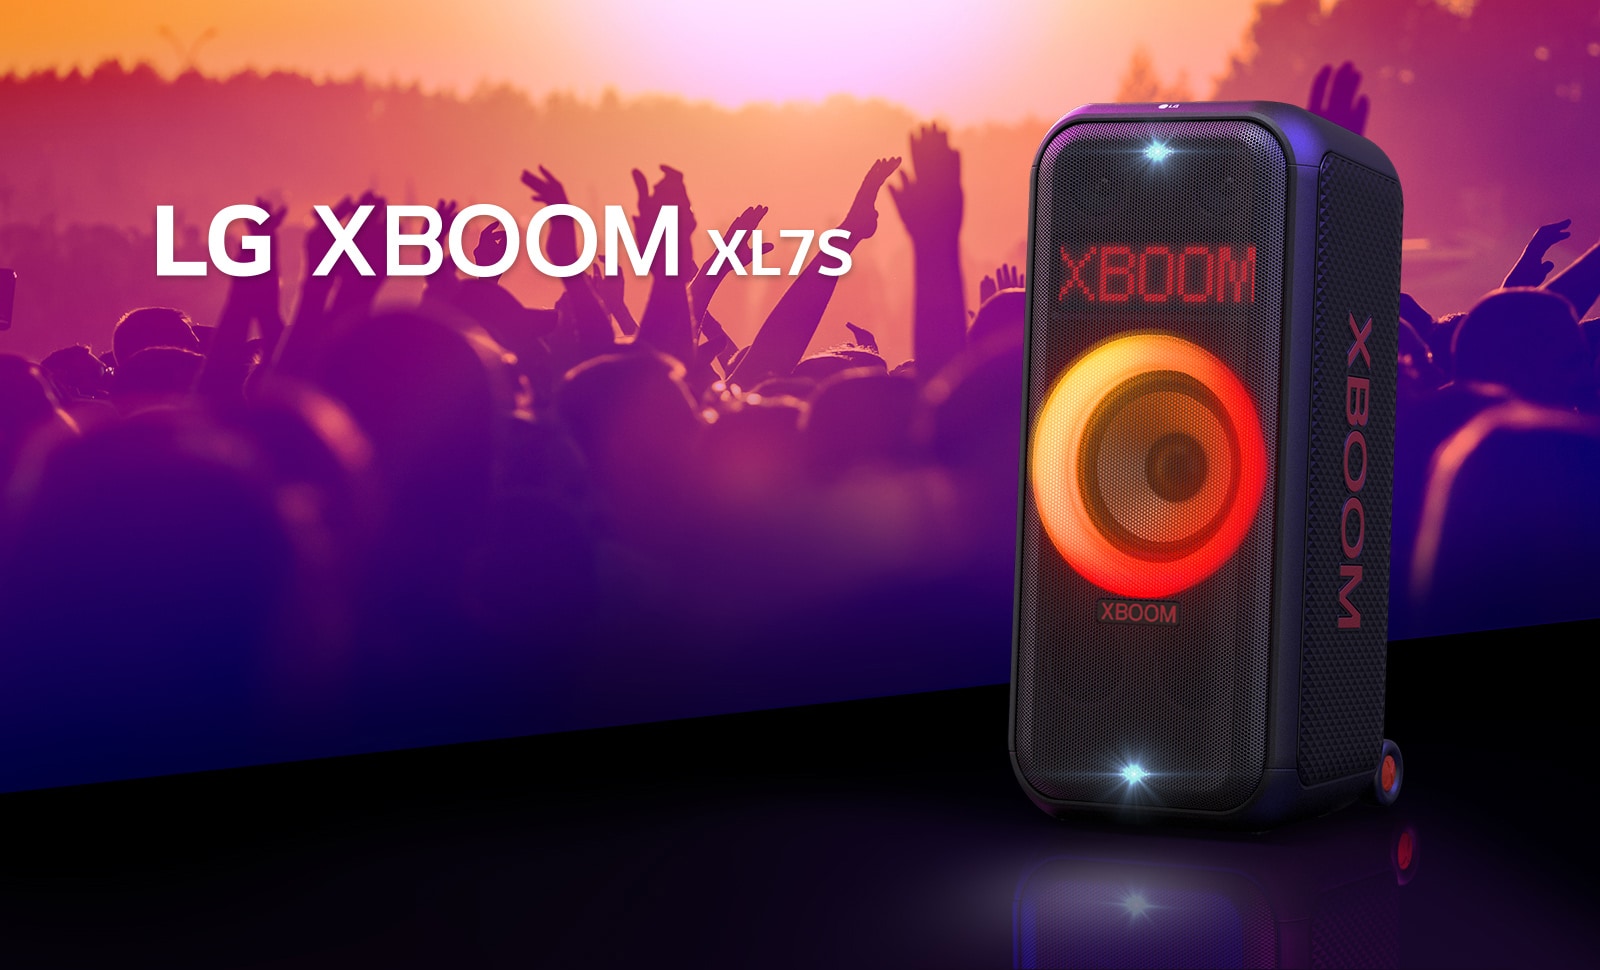 LG XBOOM XL7S е поставен на сцената с включено преливащо се червено-оранжево осветление. Зад сцената хора се наслаждават на музиката.